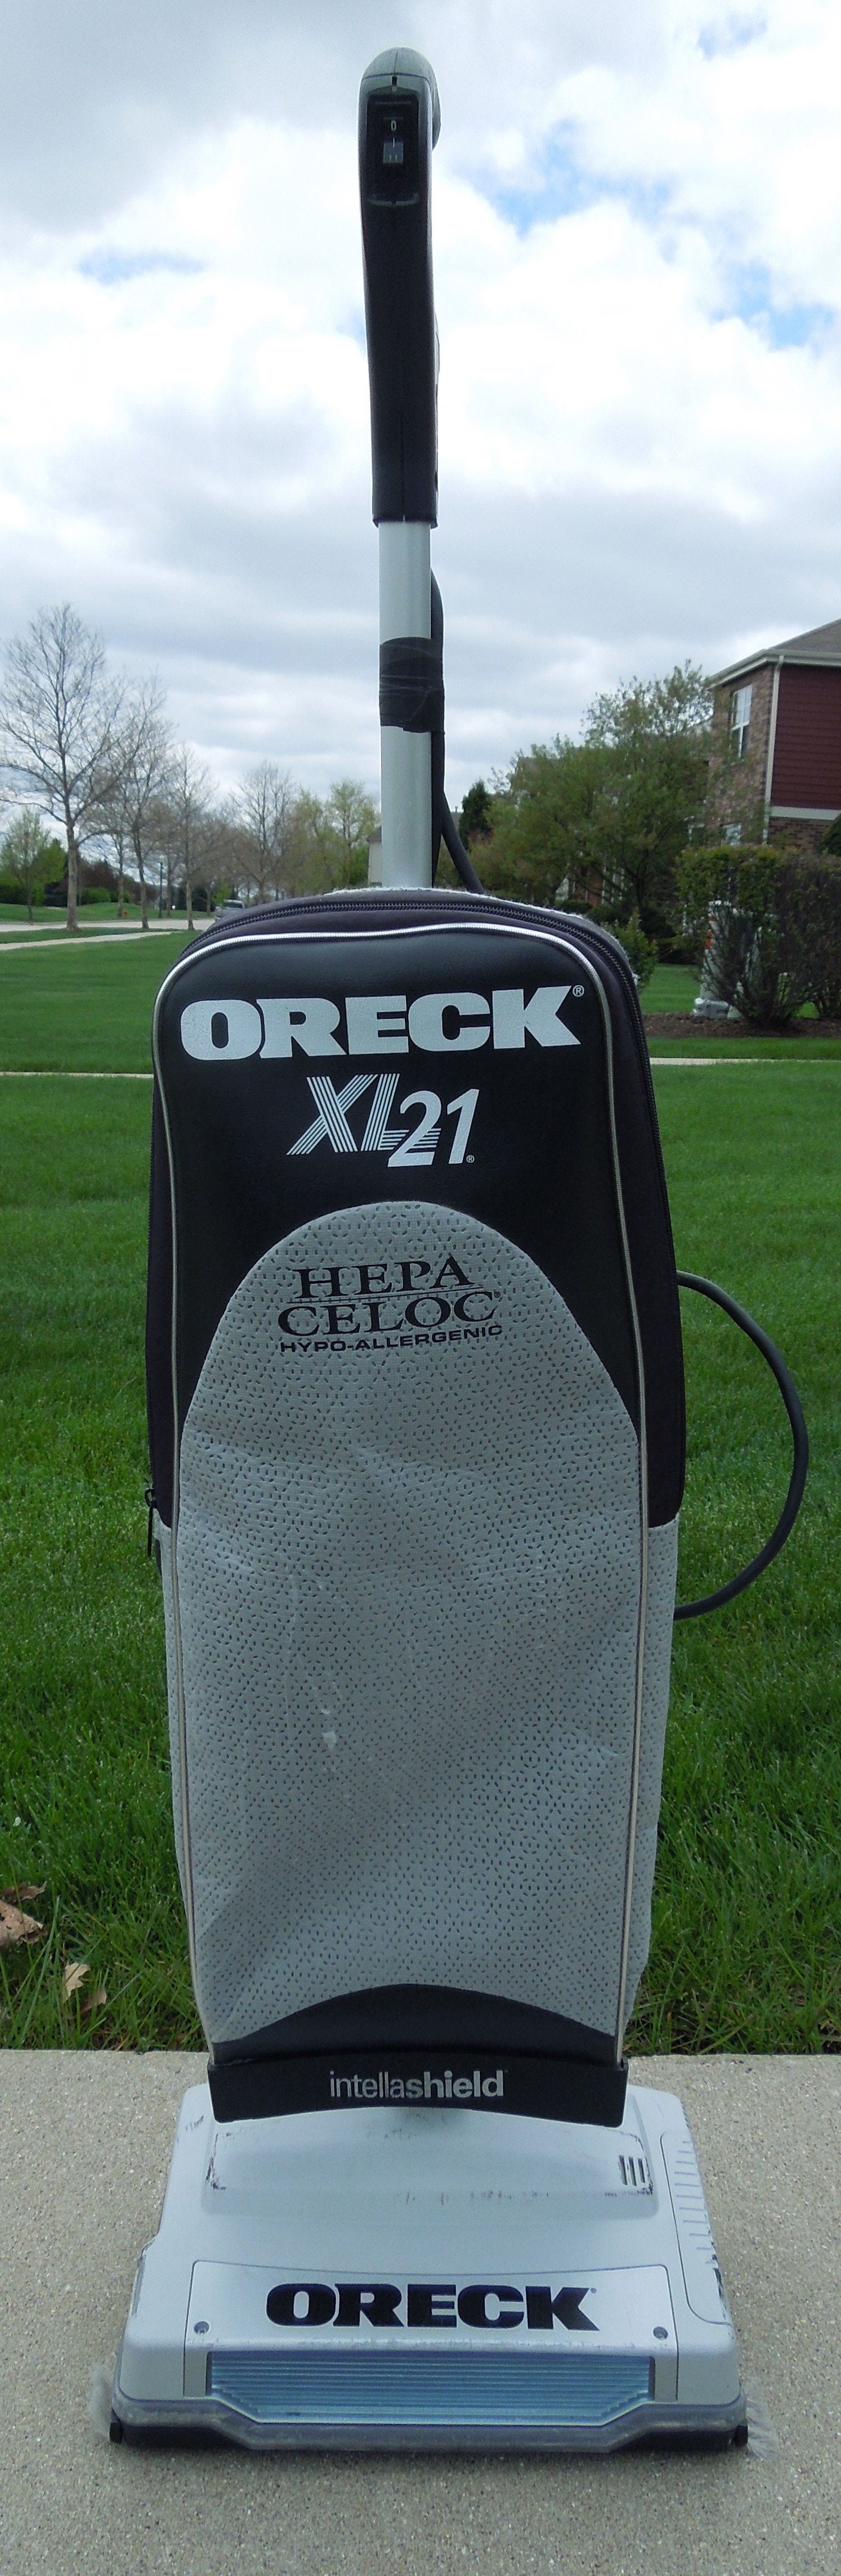 Oreck XL21 HEPA vacuum 2 speed, refurbished, very clean